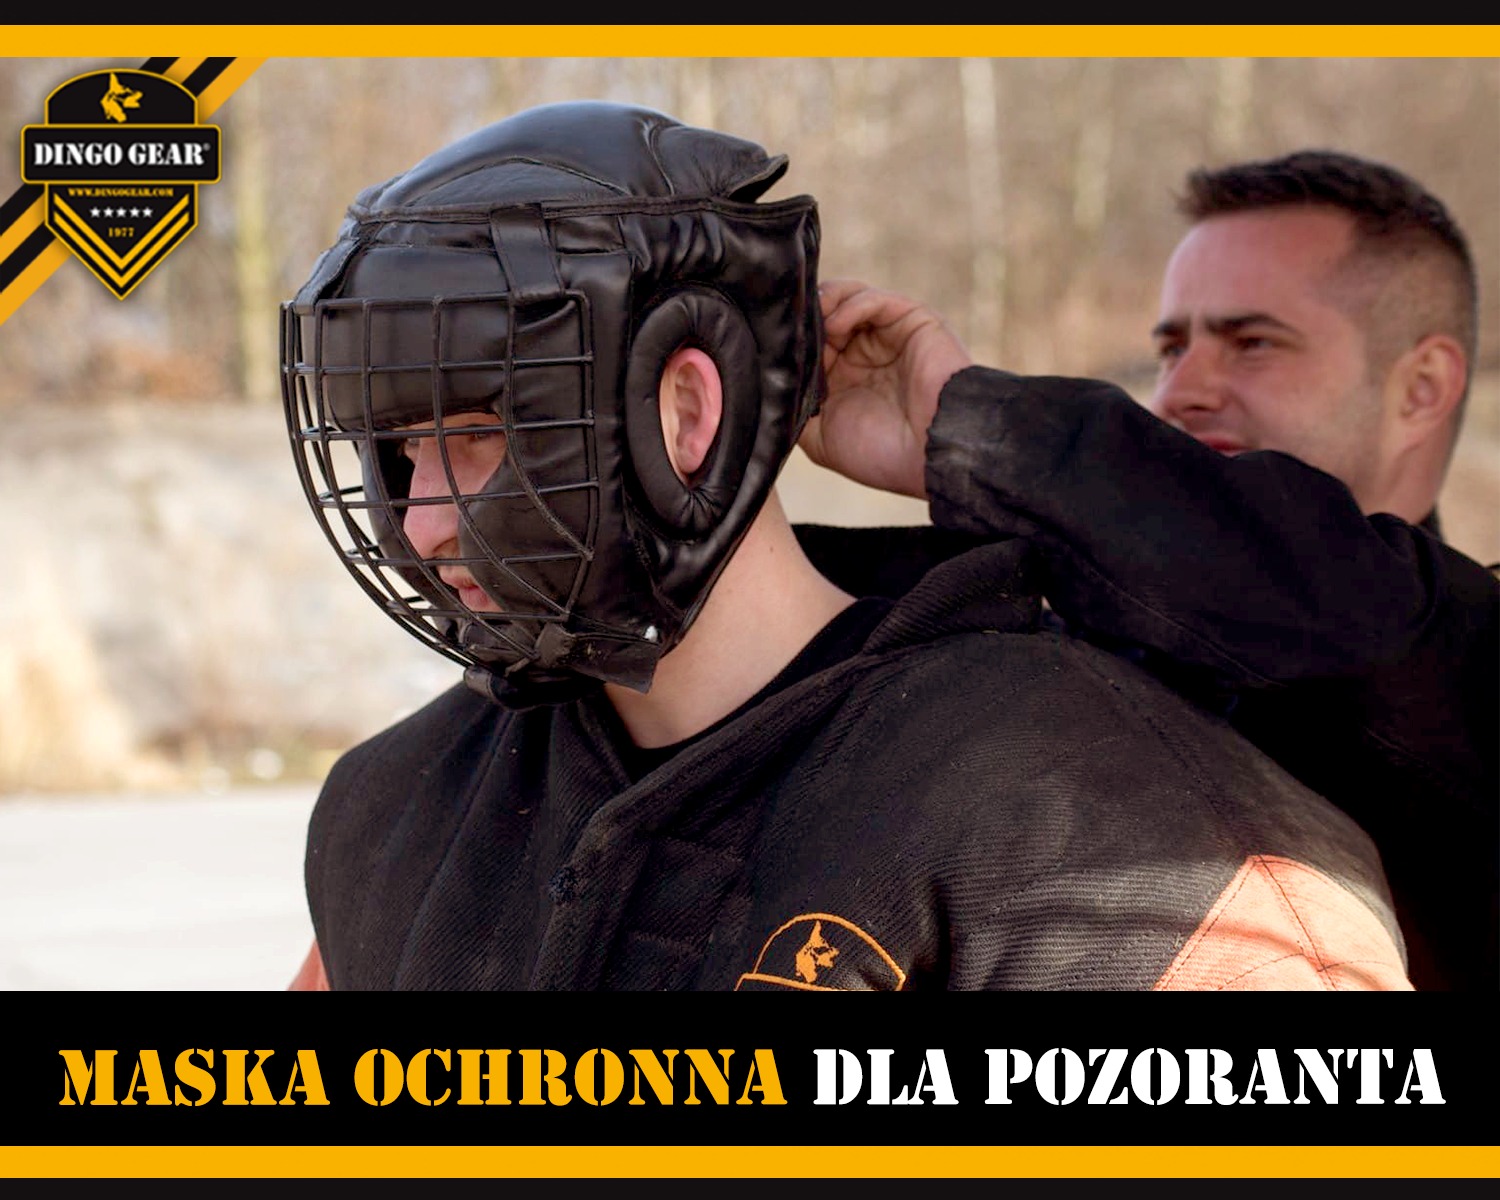 Pozorancie, w szkoleniu K9 czy sportach ringowych stosuj maski ochronne.